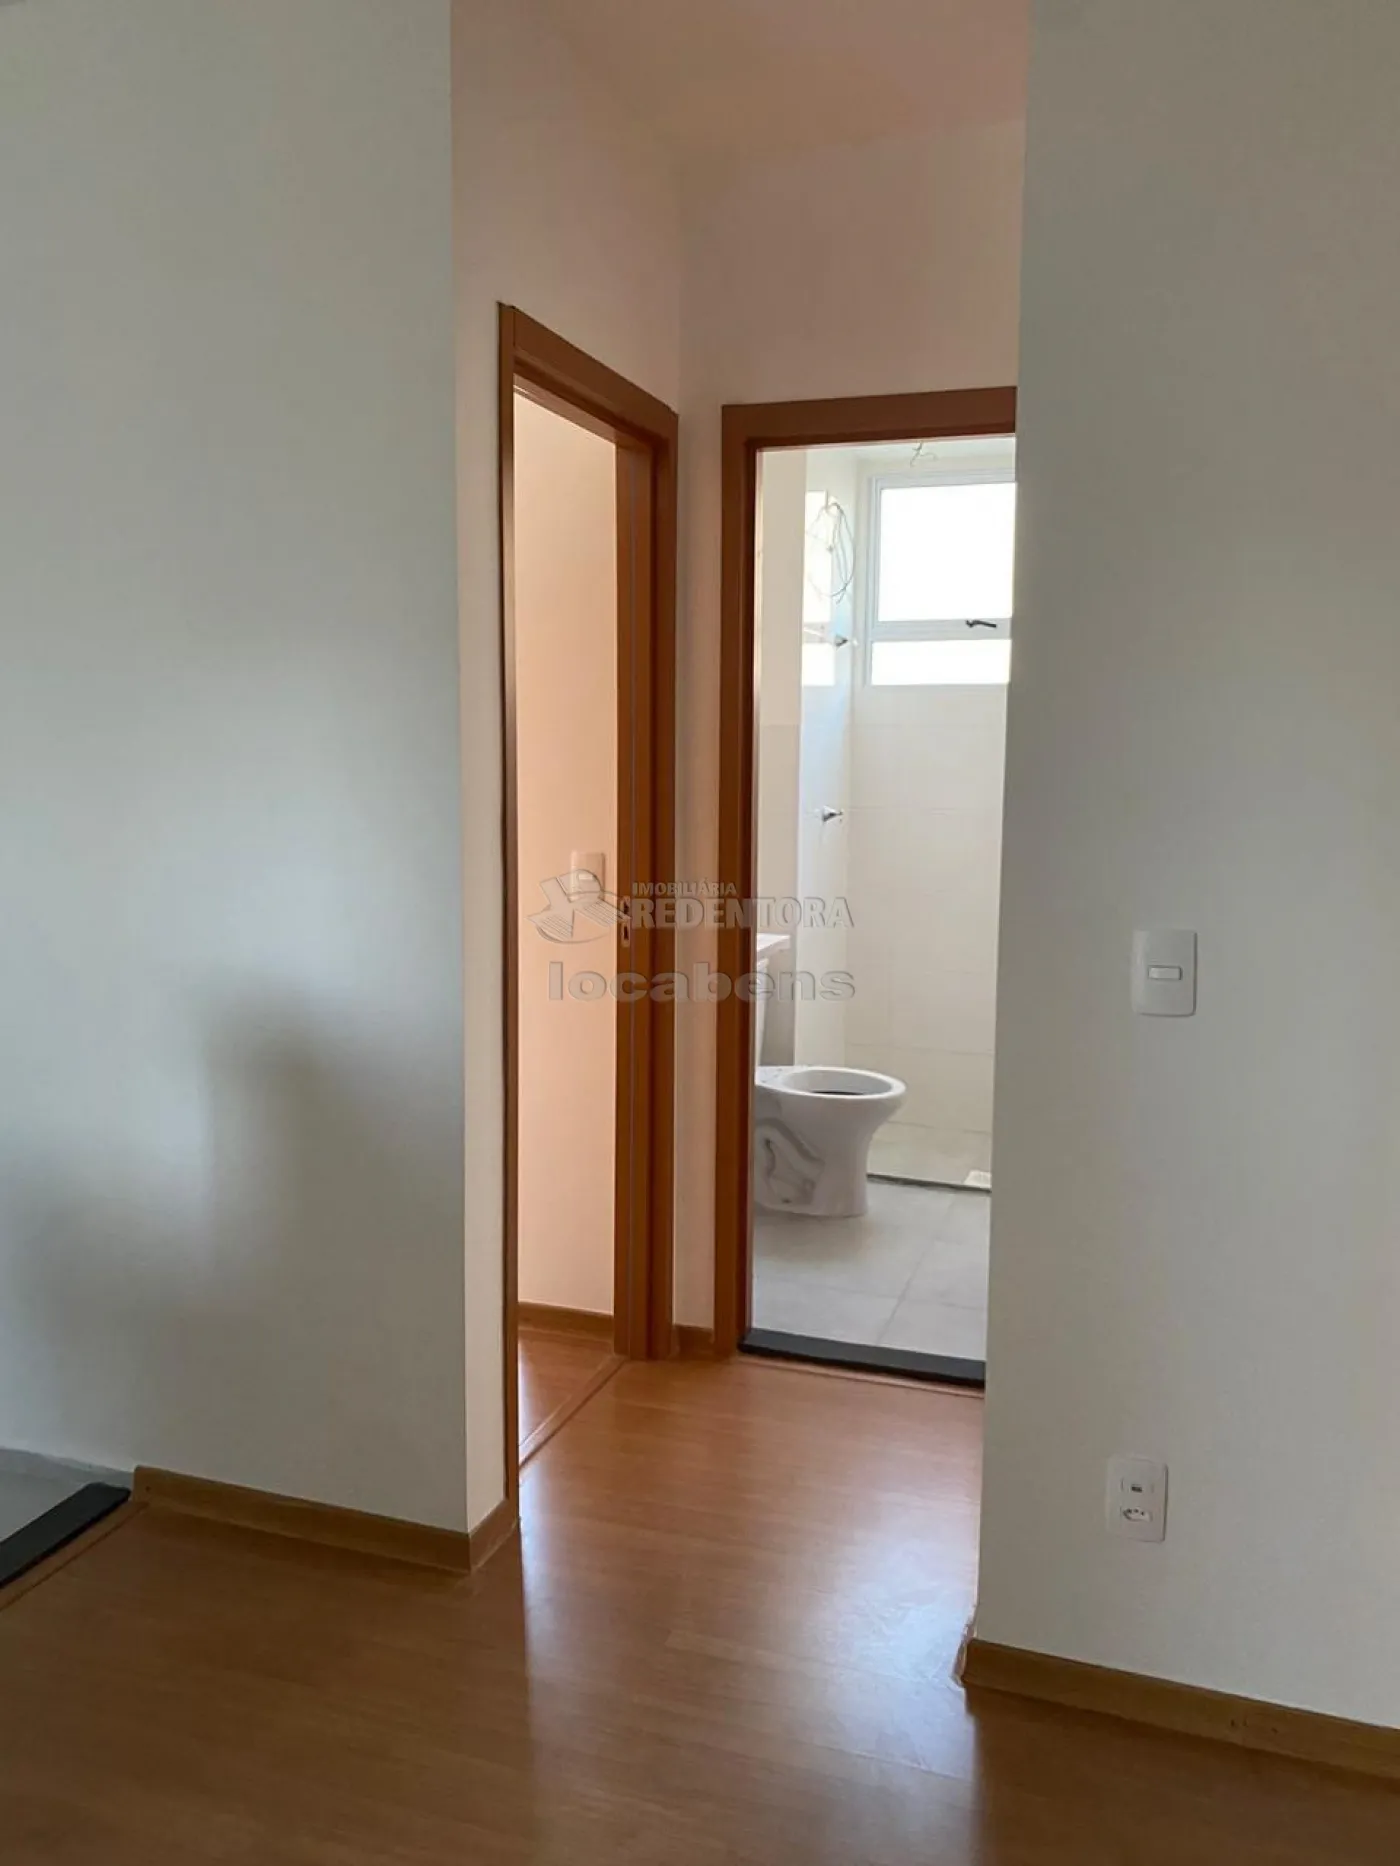 Comprar Apartamento / Padrão em Mirassol R$ 150.000,00 - Foto 2